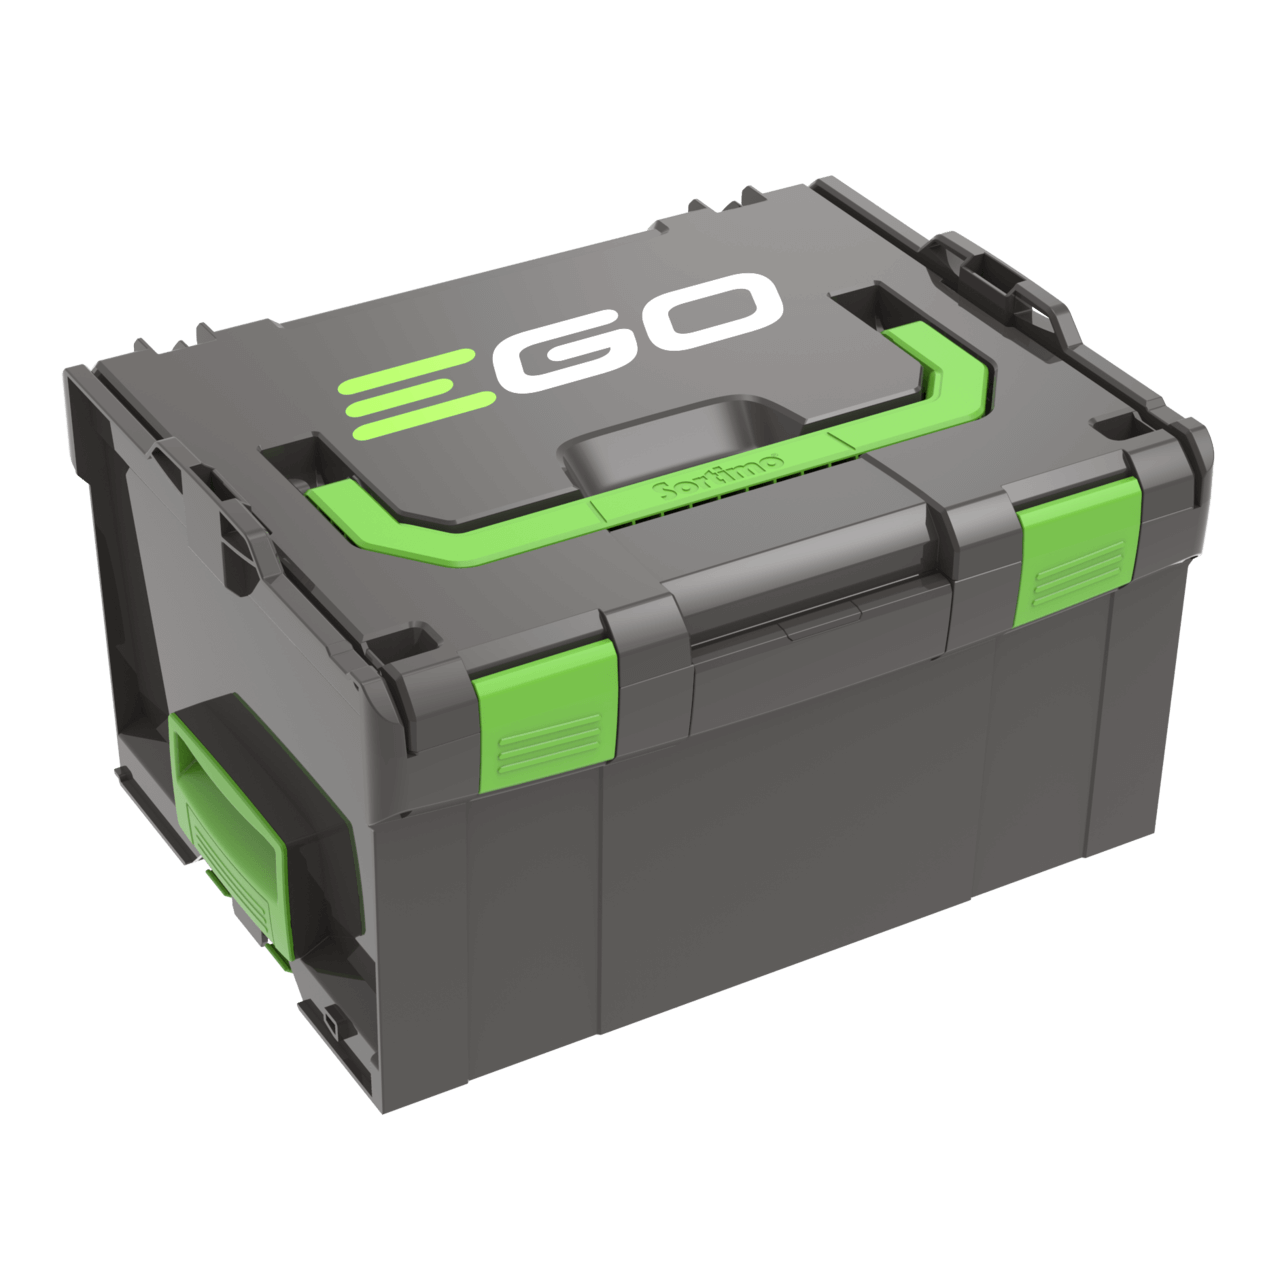 Transportna kutija za nošenje 5 prenosivih akumulatora EGO svih veličina. Može se spojiti na BBOX3000